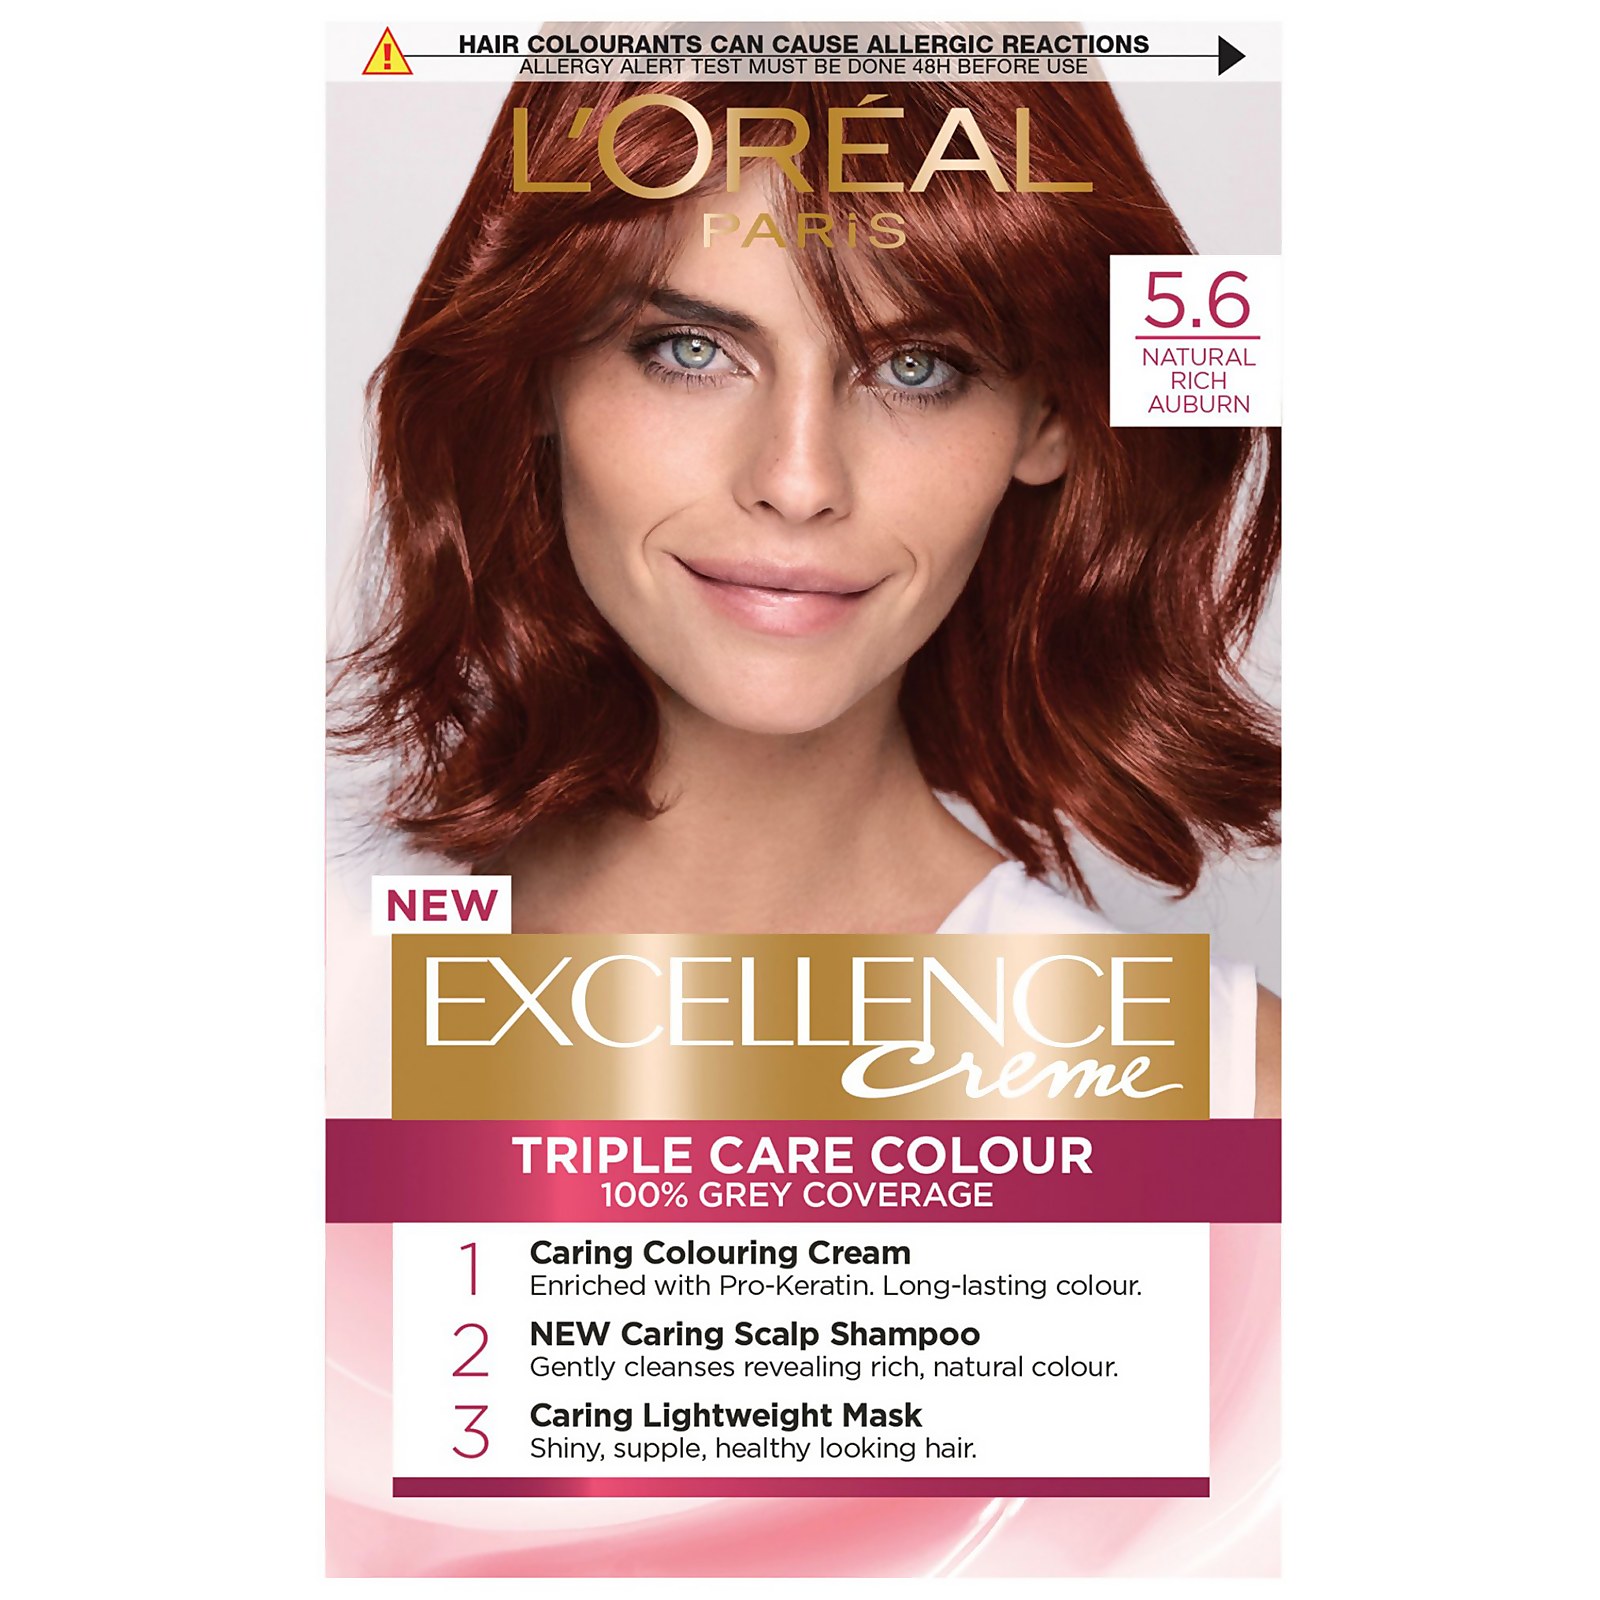 L'Oréal Paris Excellence Crème Permanent Hair Dye (Various Shades) - 5.6 Natural Rich Auburn